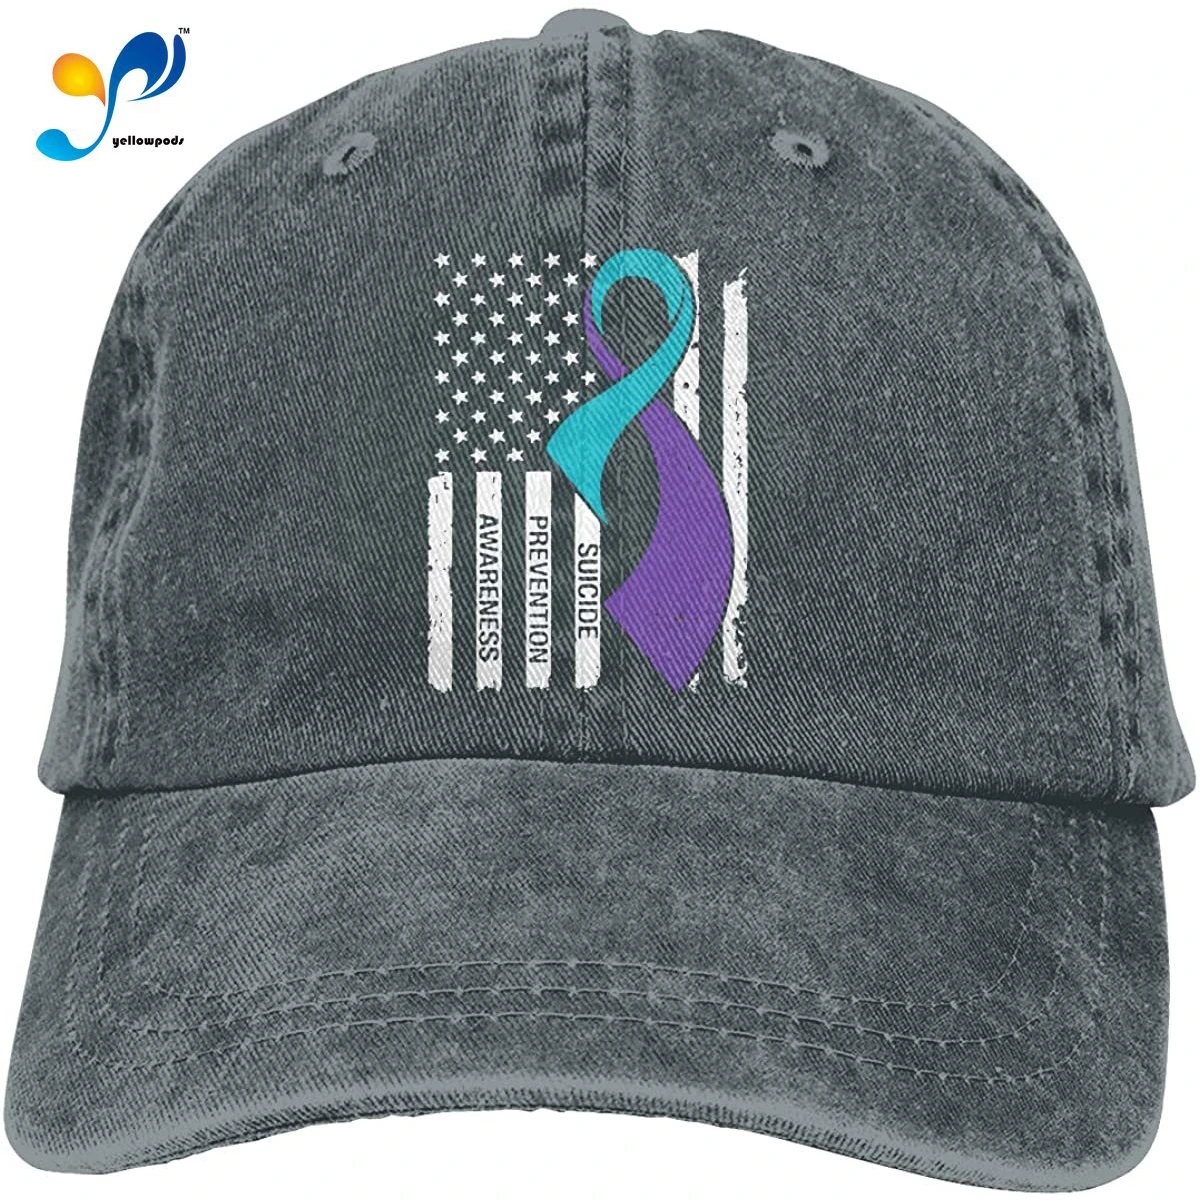 

WYFQ501 Suicide Prevention Awareness Flag Men's Women's Adjustable Jeans Baseball Hat | Denim Jeanet Dad Hats